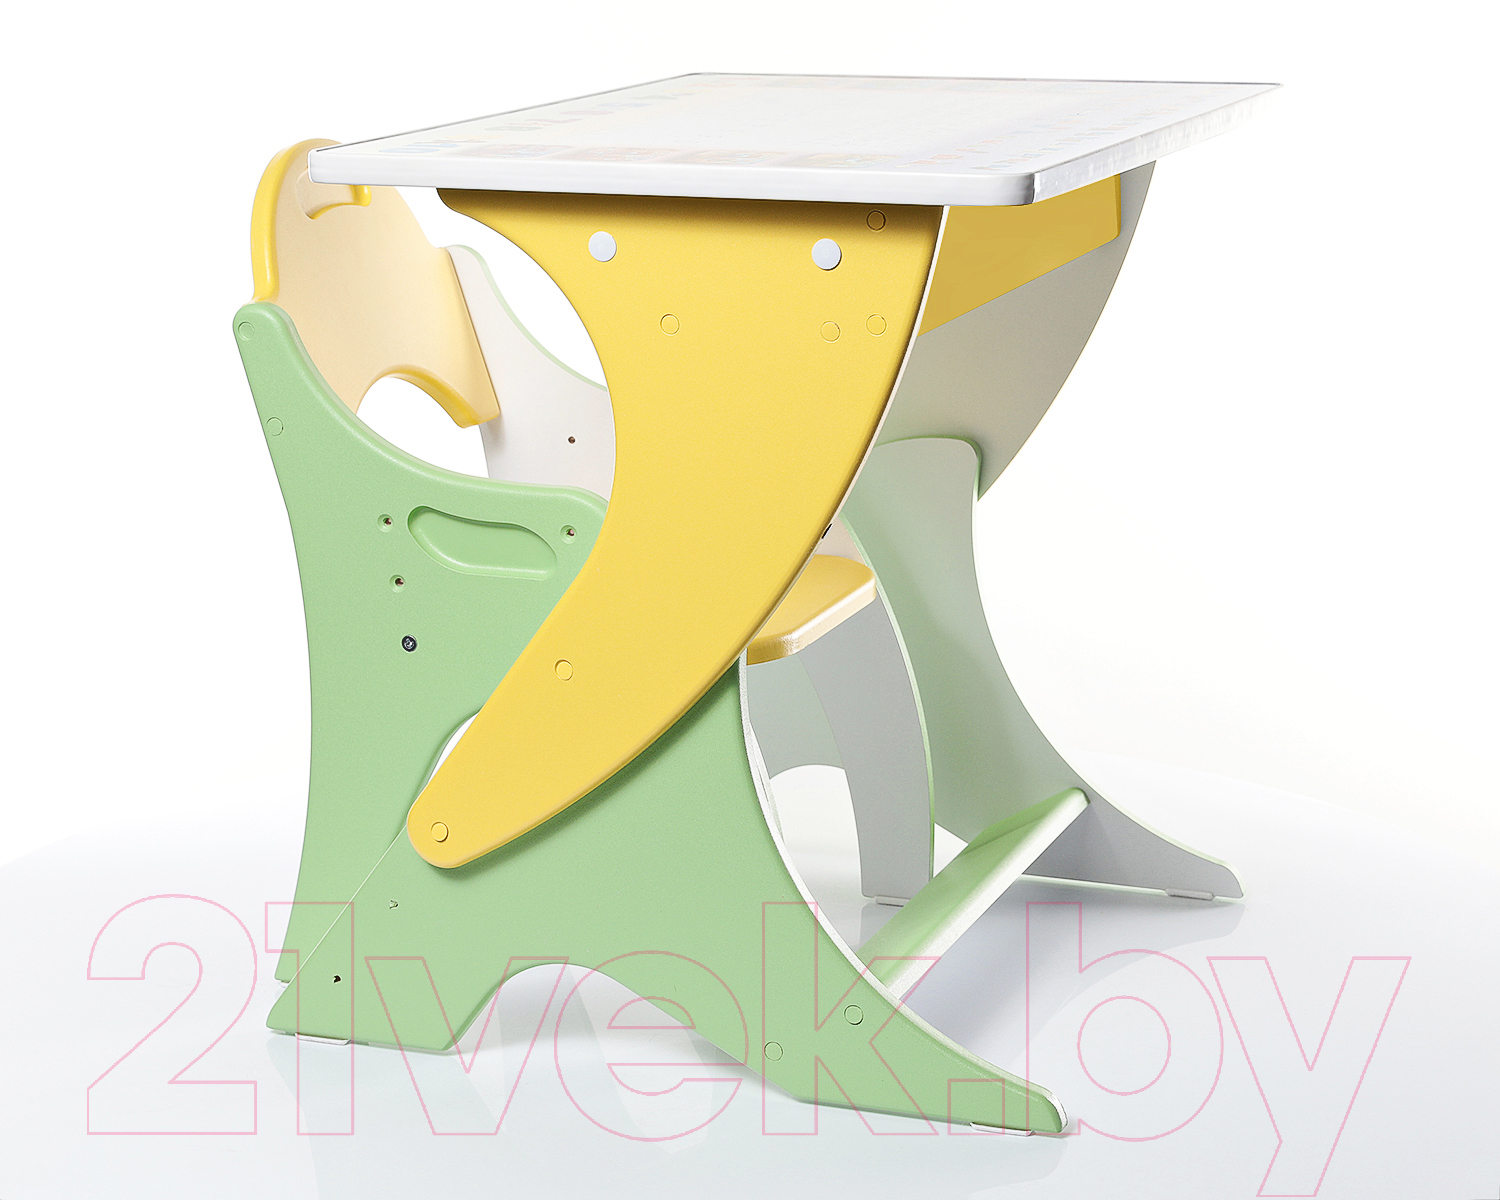 Комплект мебели с детским столом Tech Kids Буквы-цифры 14-327